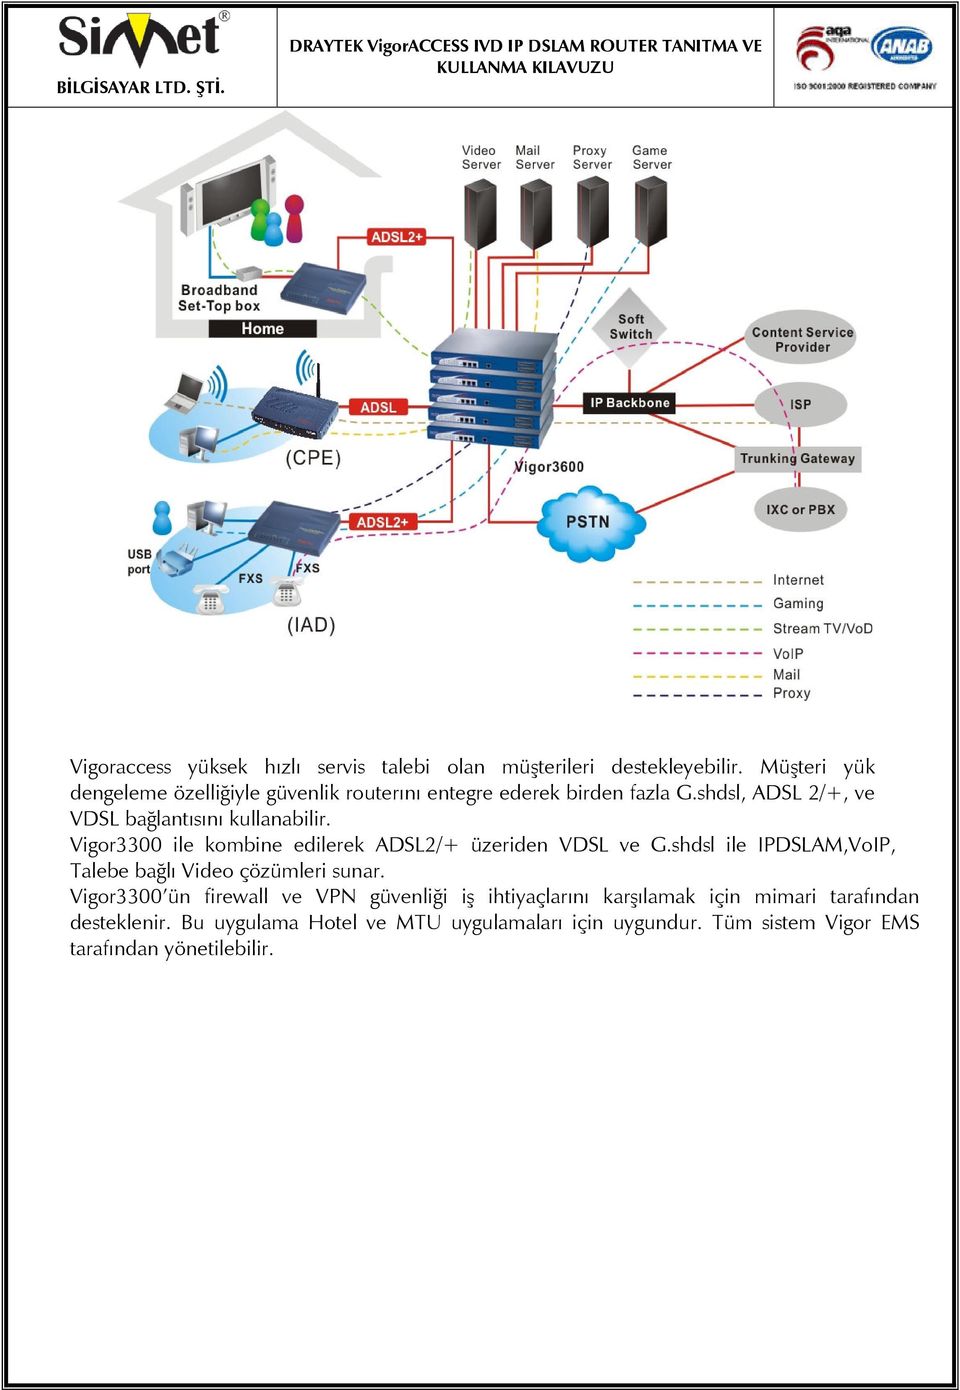 shdsl, ADSL 2/+, ve VDSL bağlantısını kullanabilir. Vigor3300 ile kombine edilerek ADSL2/+ üzeriden VDSL ve G.